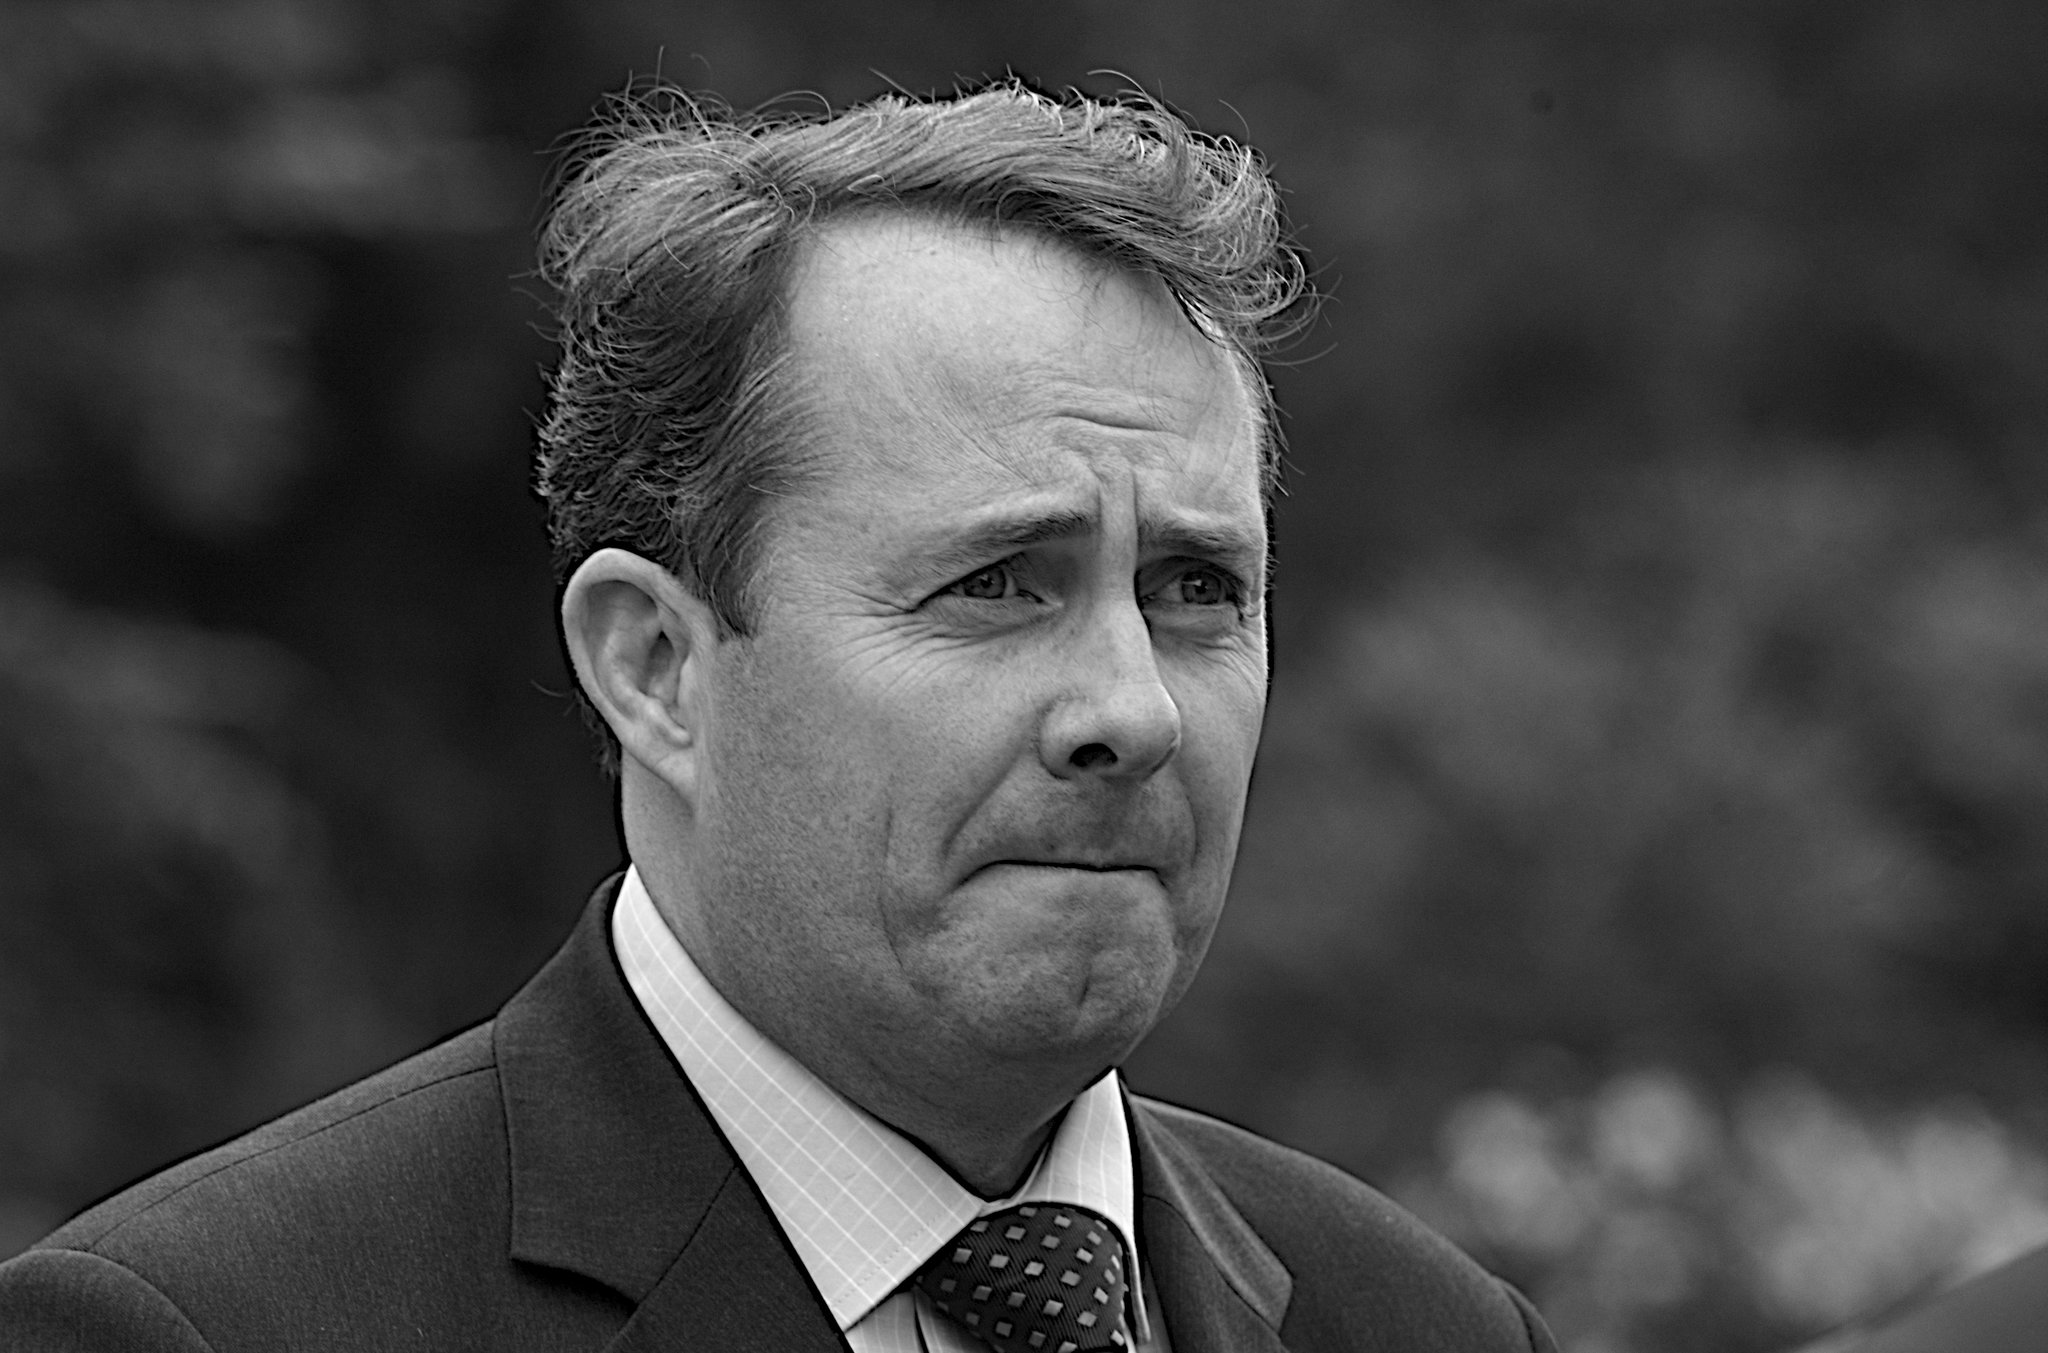 Министр внешней торговли Соединенного Королевства Лиам Фокс [(cc) Steve Punter]  